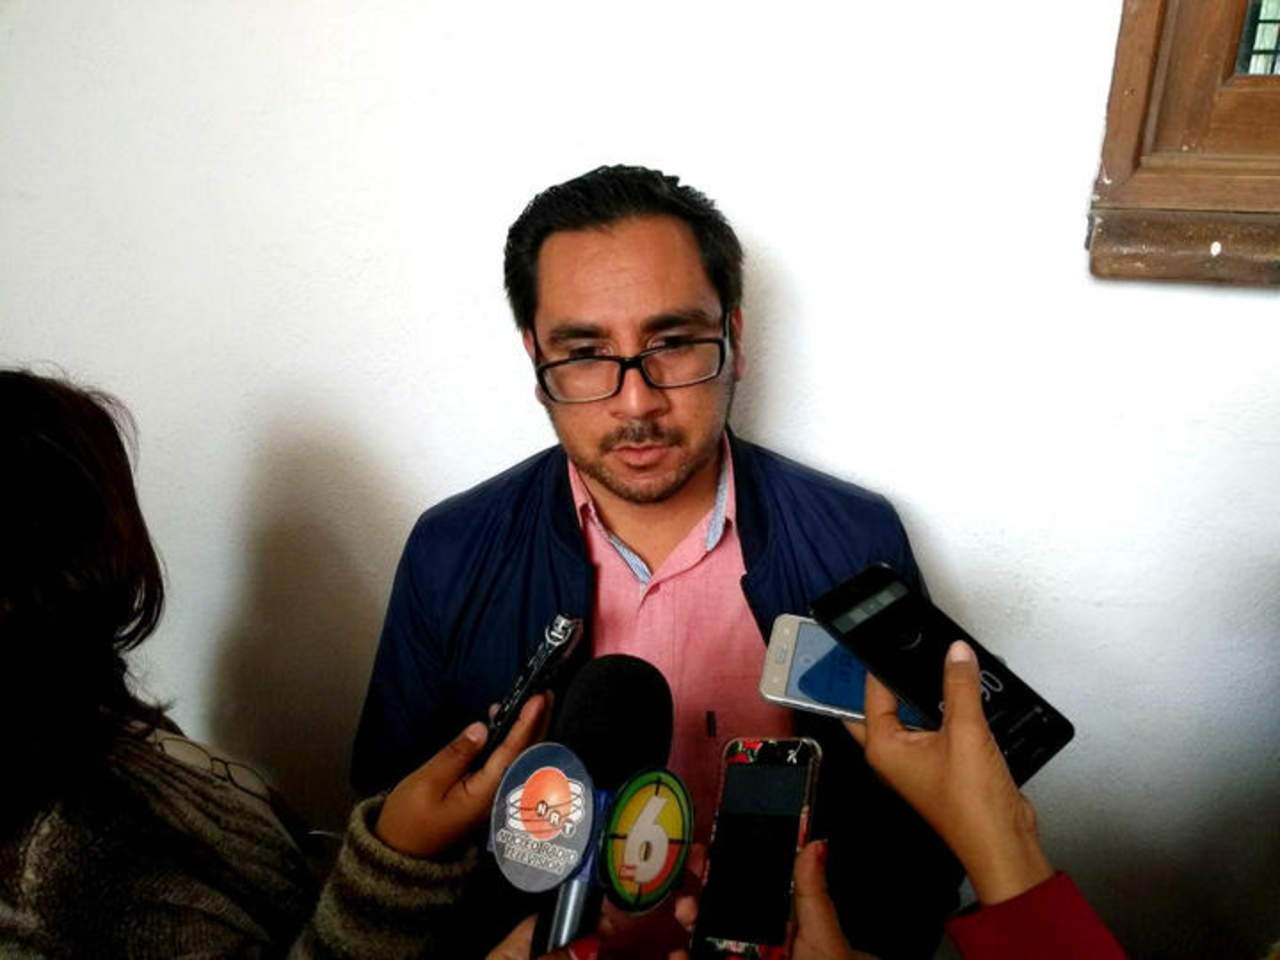 Presidente de San Aelredo demandará a activista